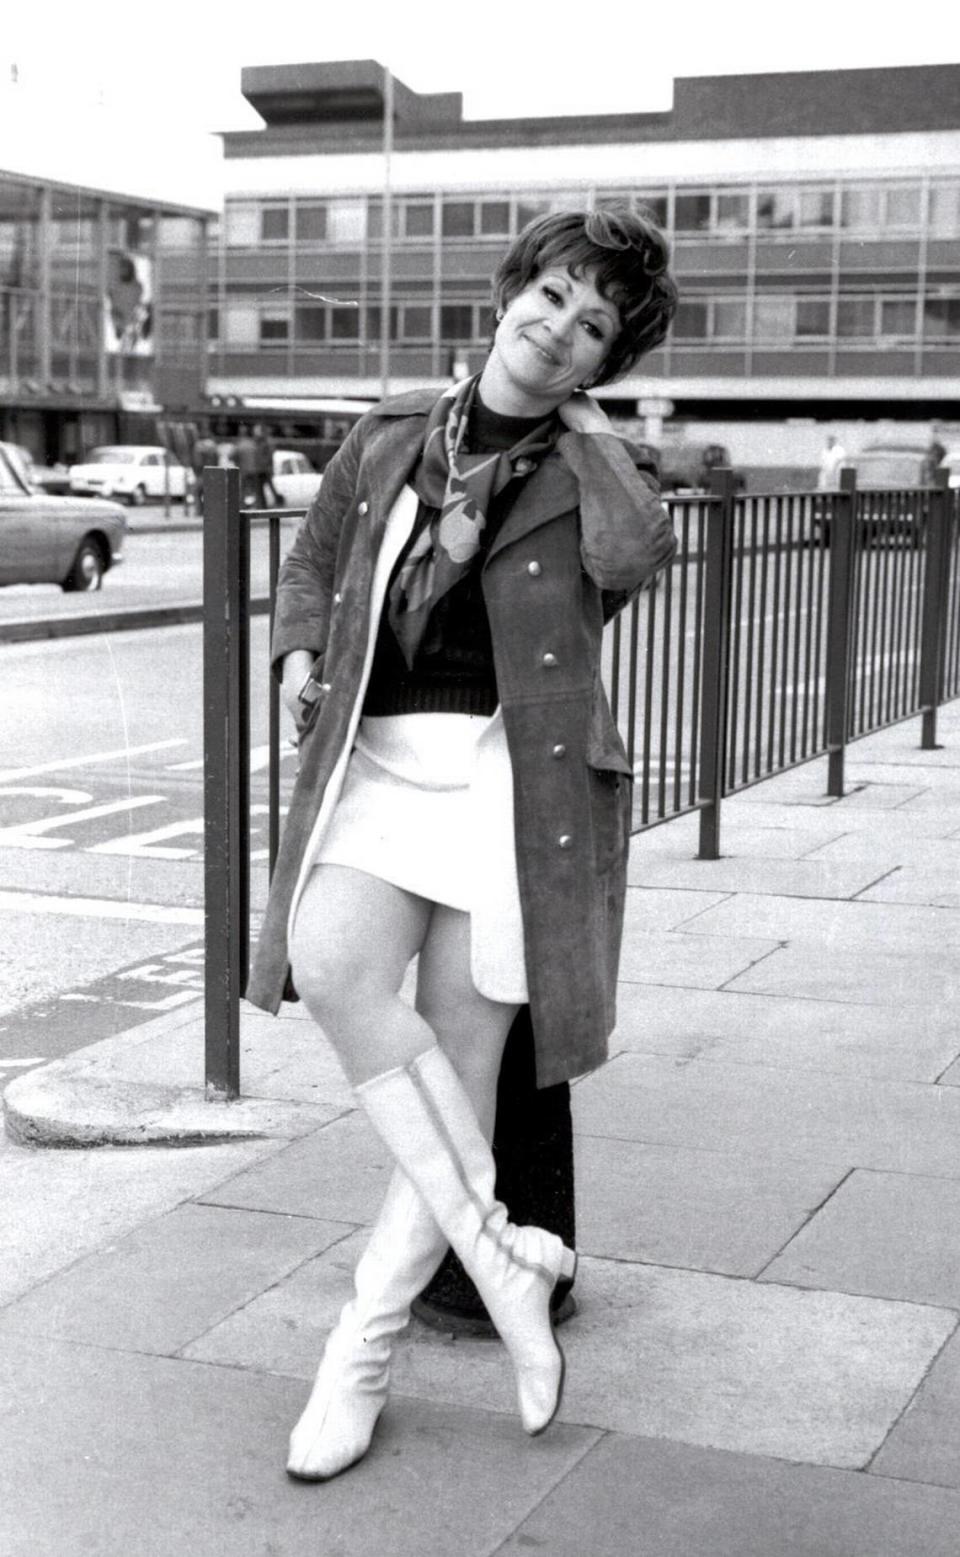 Fotografía de archivo del 26 de marzo de 1969 donde aparece la actriz de origen puertorriqueño Chita Rivera mientras posa en el aeropuerto de Heathrow en Londres, Reino Unido.